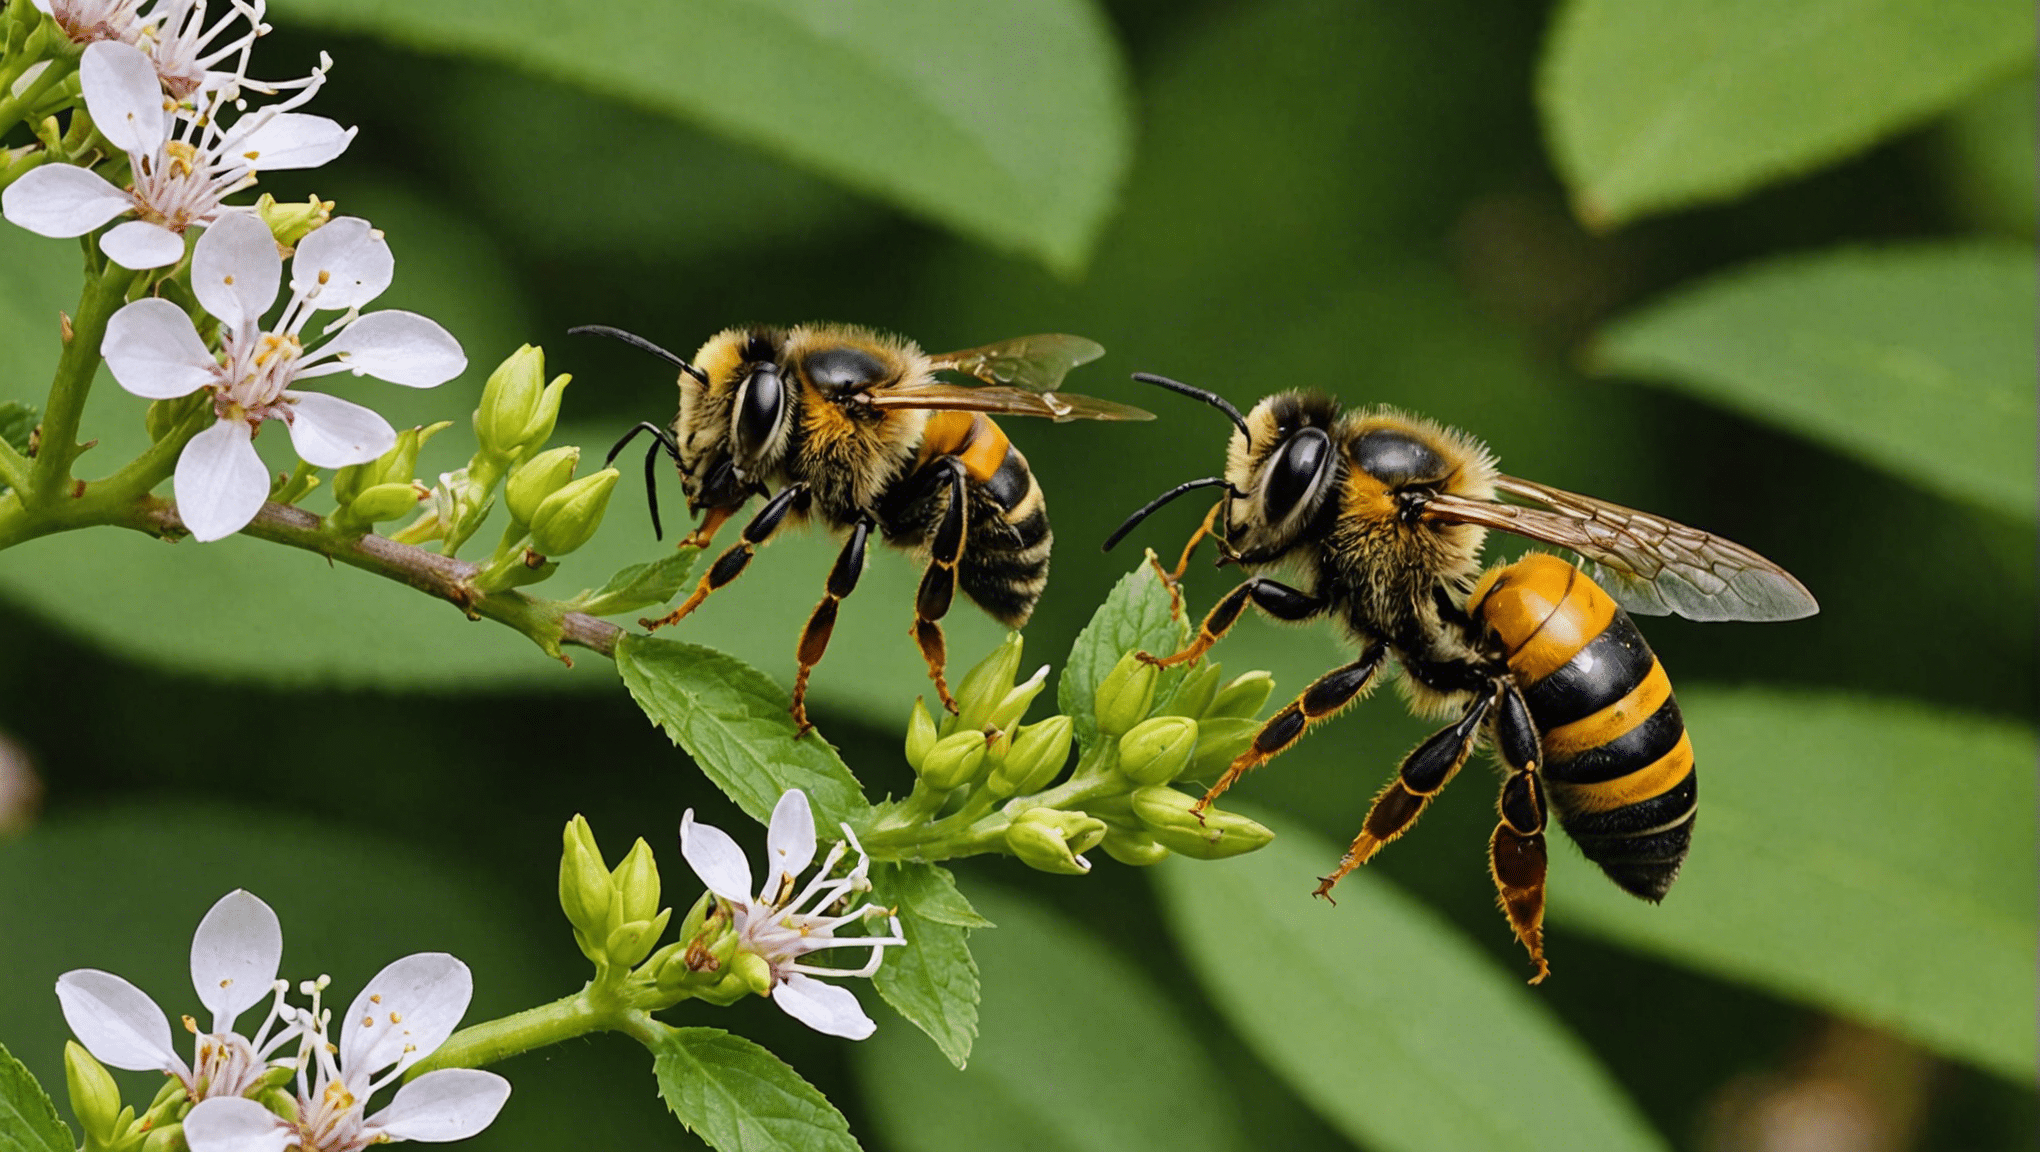 upptäck skillnaderna mellan bin, getingar och bålgetingar och lär dig om deras utseende, beteende och livsmiljöer.